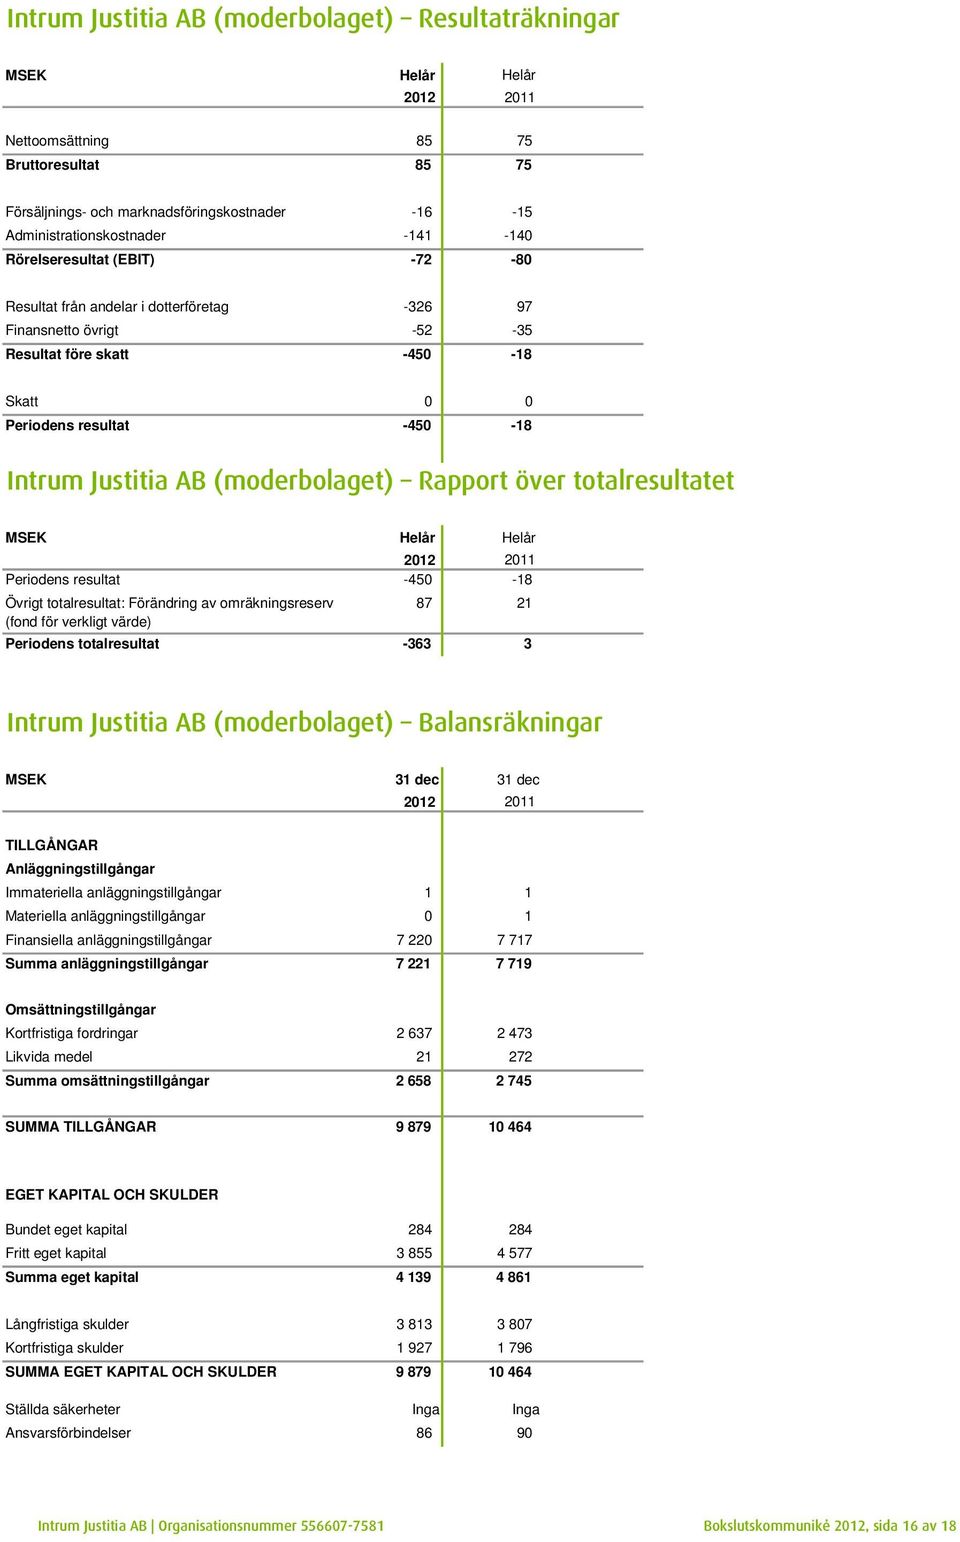 (moderbolaget) Rapport över totalresultatet MSEK Helår Helår 2012 2011 Periodens resultat -450-18 Övrigt totalresultat: Förändring av omräkningsreserv (fond för verkligt värde) 87 21 Periodens